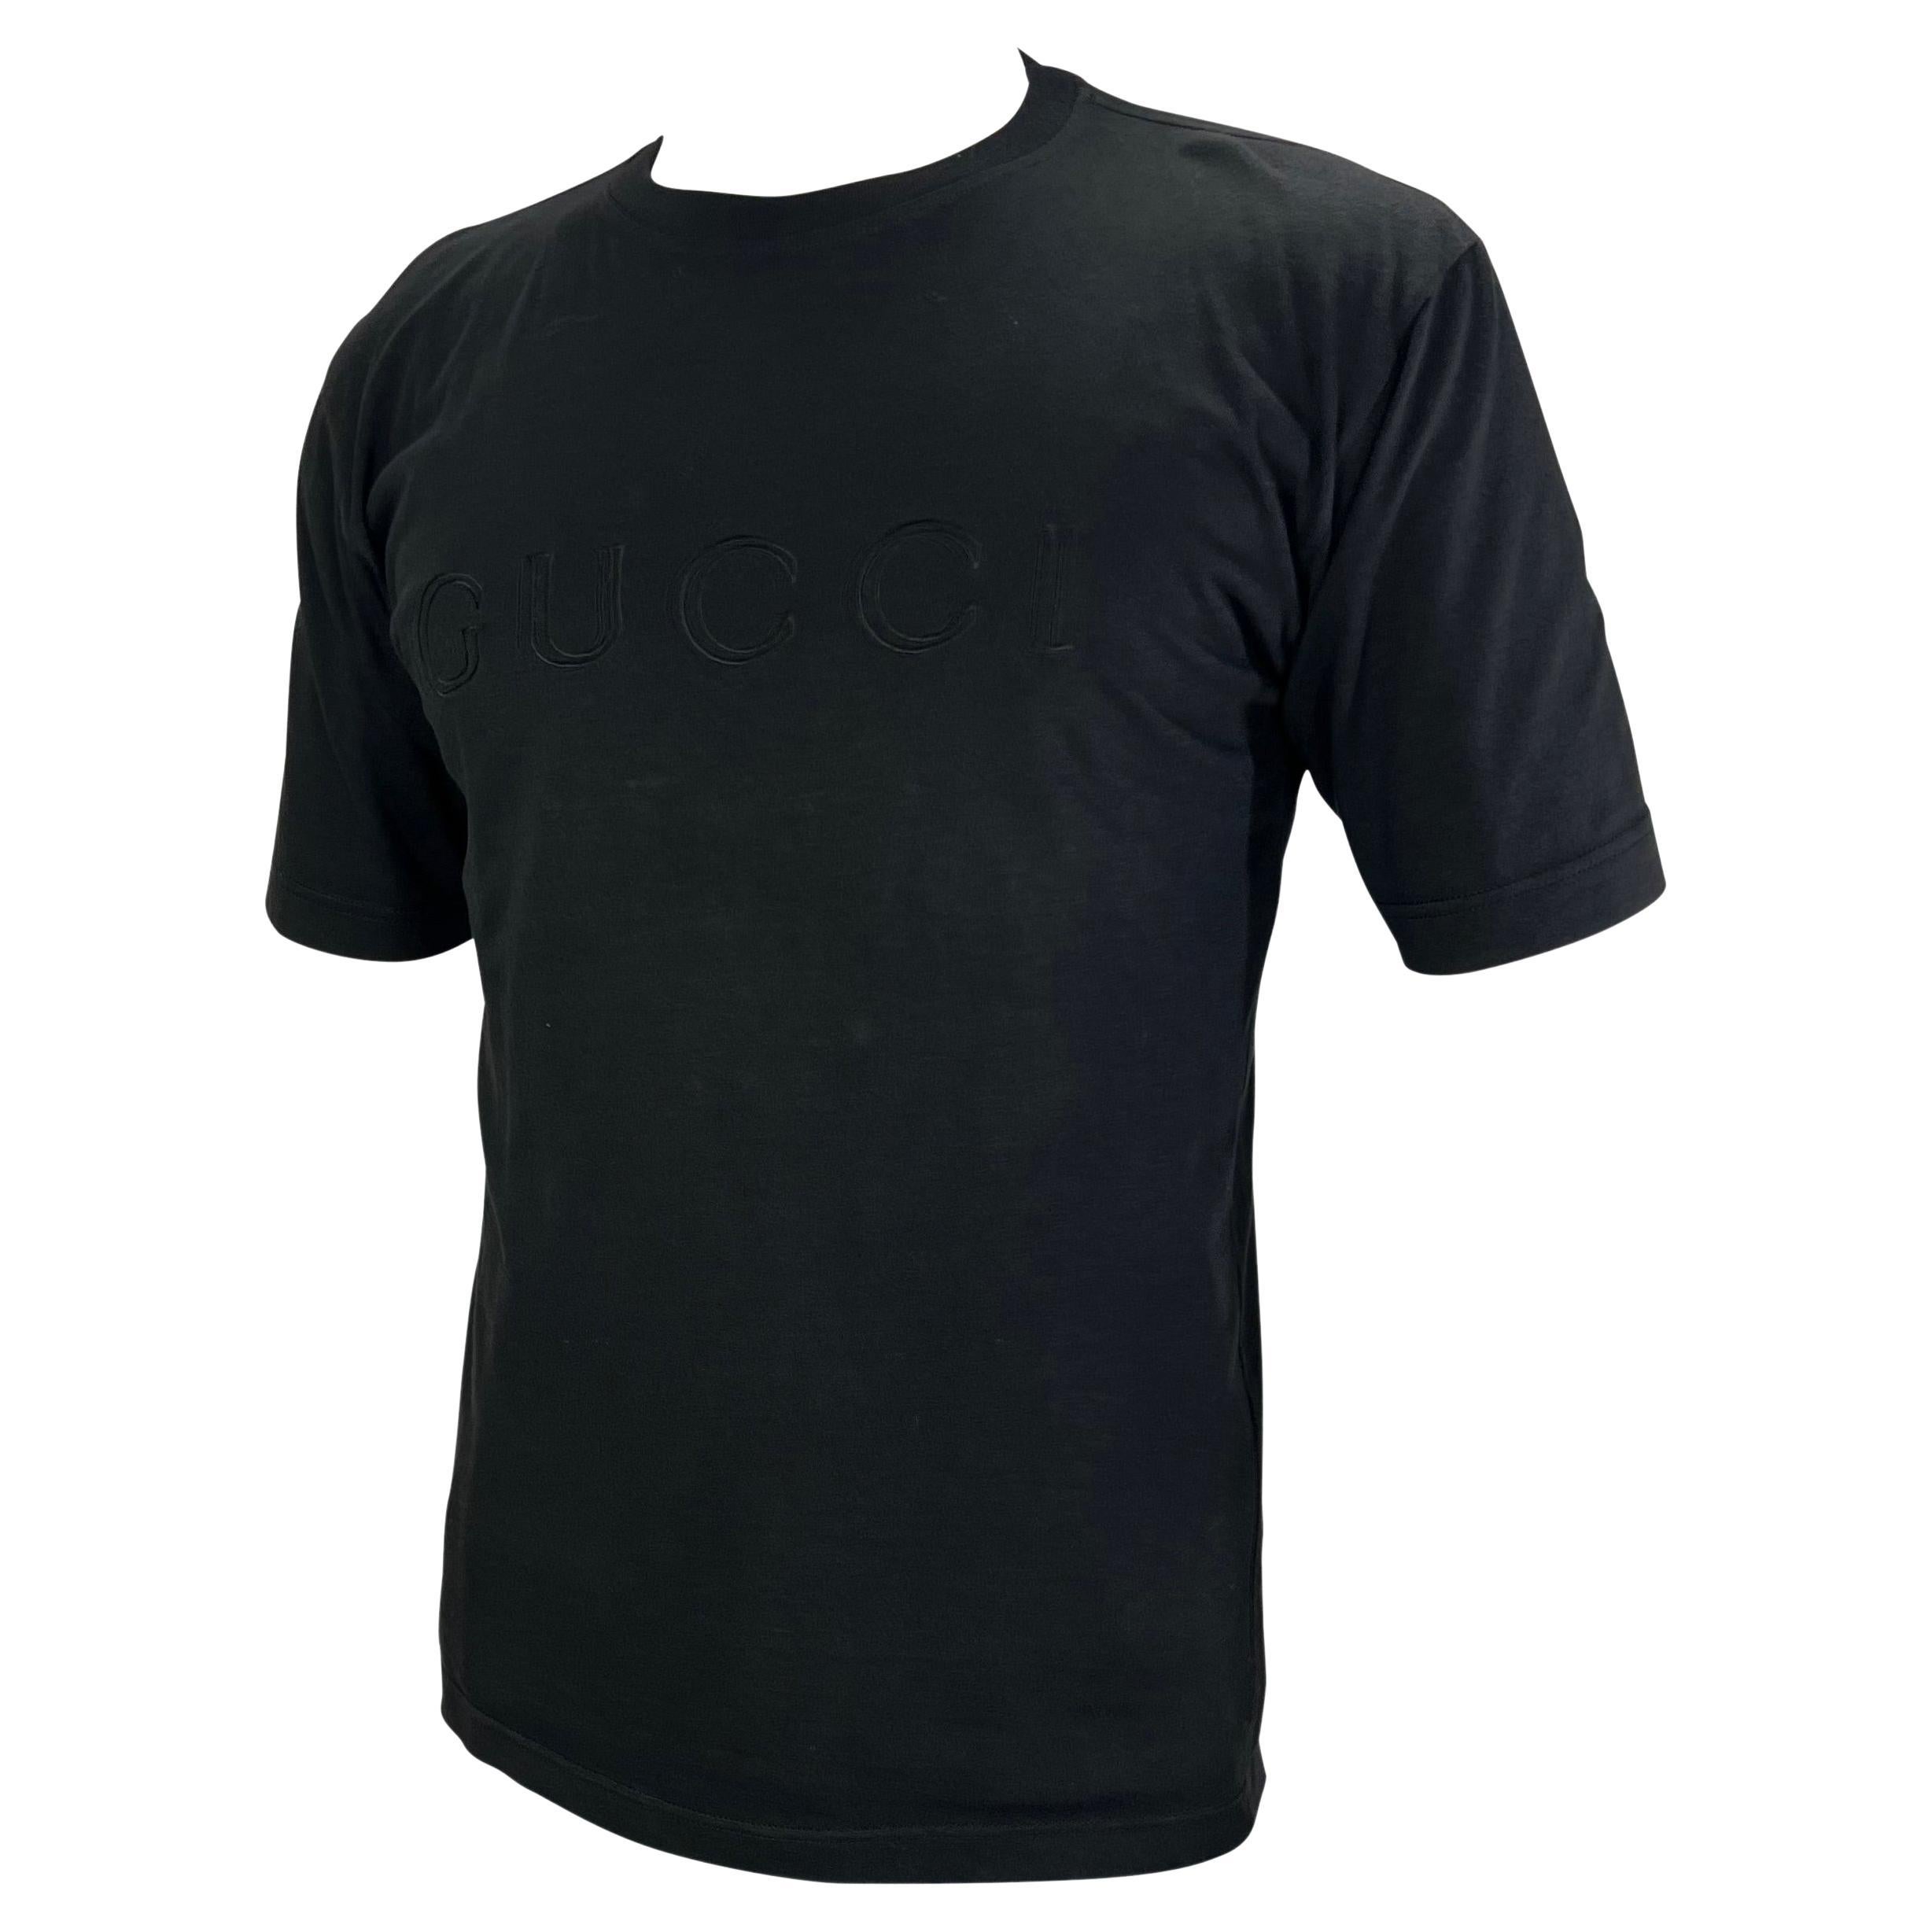 Wir präsentieren ein schwarzes Gucci-Logo-T-Shirt, entworfen von Tom Ford. Dieses schwarze T-Shirt aus dem Jahr 1996 ist mit dem Gucci-Schriftzug auf der Brust perfekt in Szene gesetzt. Dieses Gucci by Tom Ford Hemd ist das perfekte Teil, um Ihren